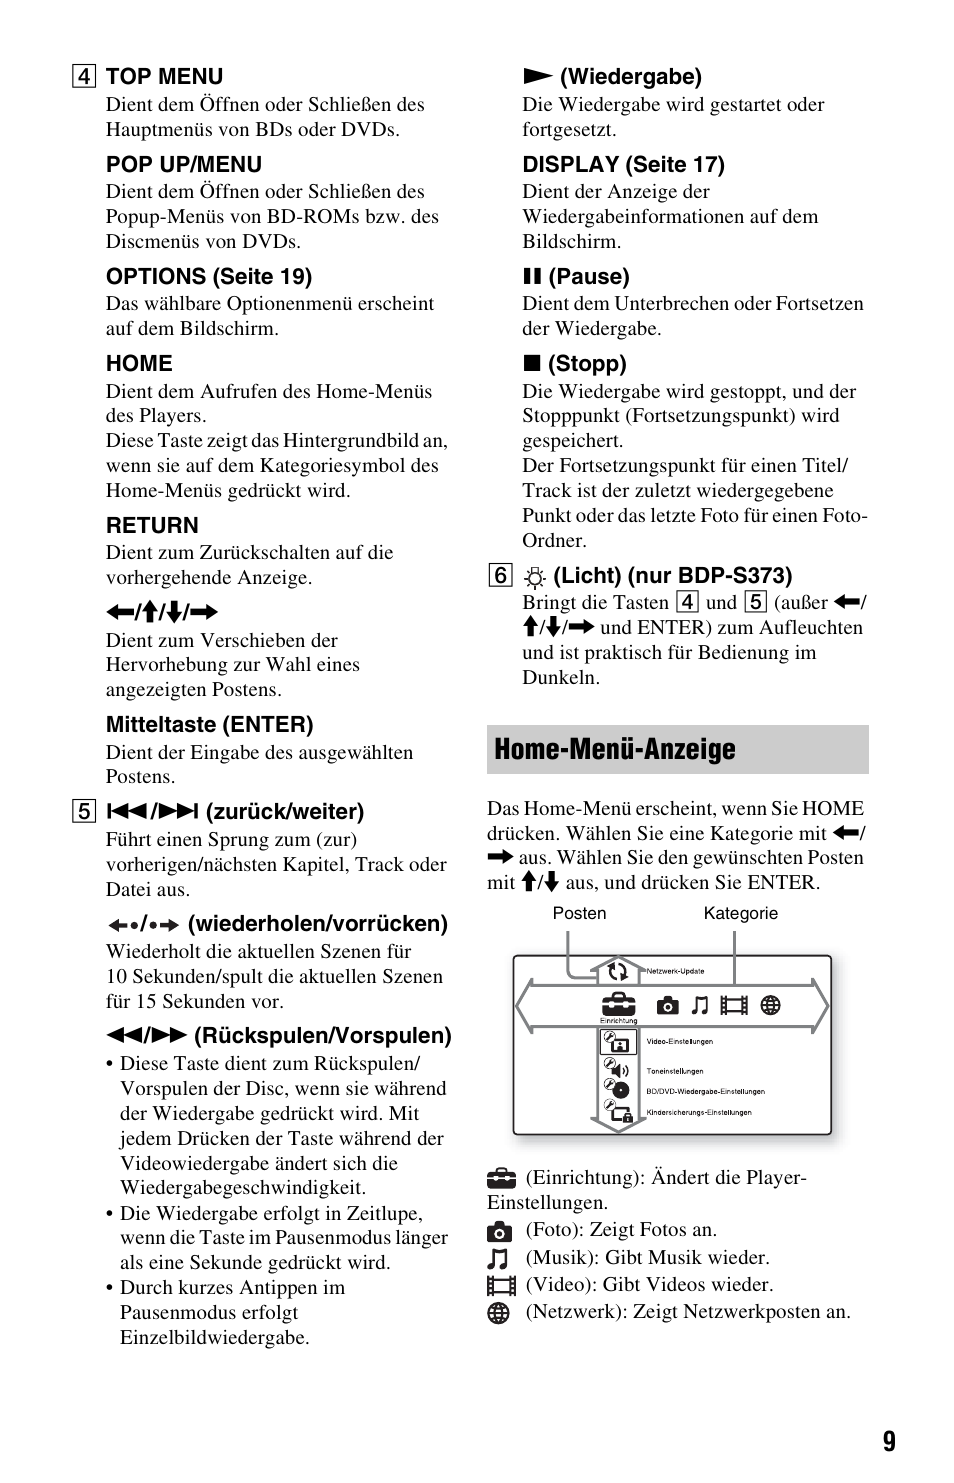 Home-menü-anzeige | Sony BDP-S370 Benutzerhandbuch | Seite 9 / 39